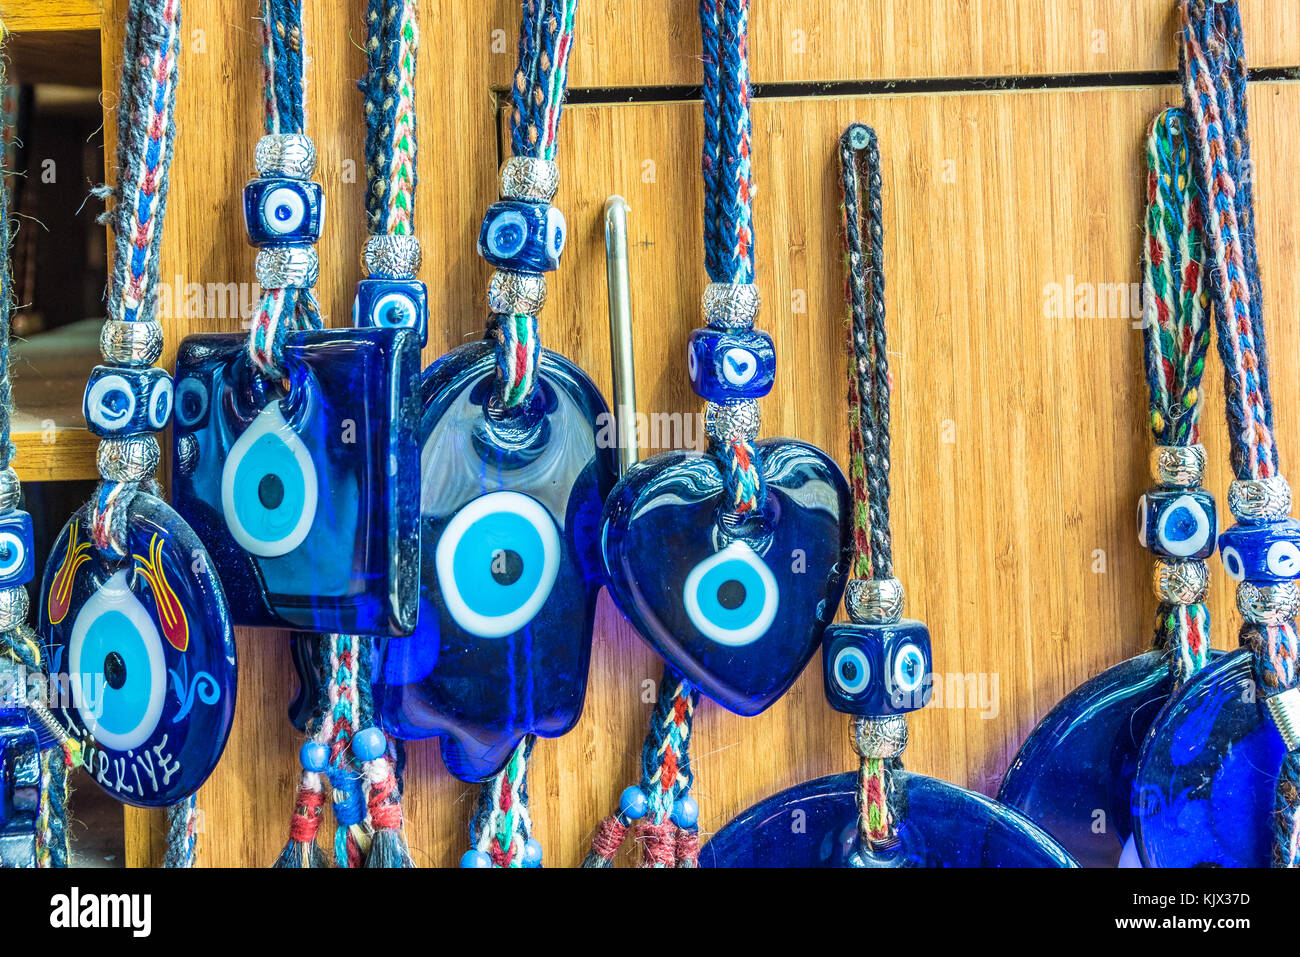 Traditionelle Turkische Souvenir Bose Auge Barte Die Blauen Augen Auch Als Bose Auge Charme Bekannt Stockfotografie Alamy